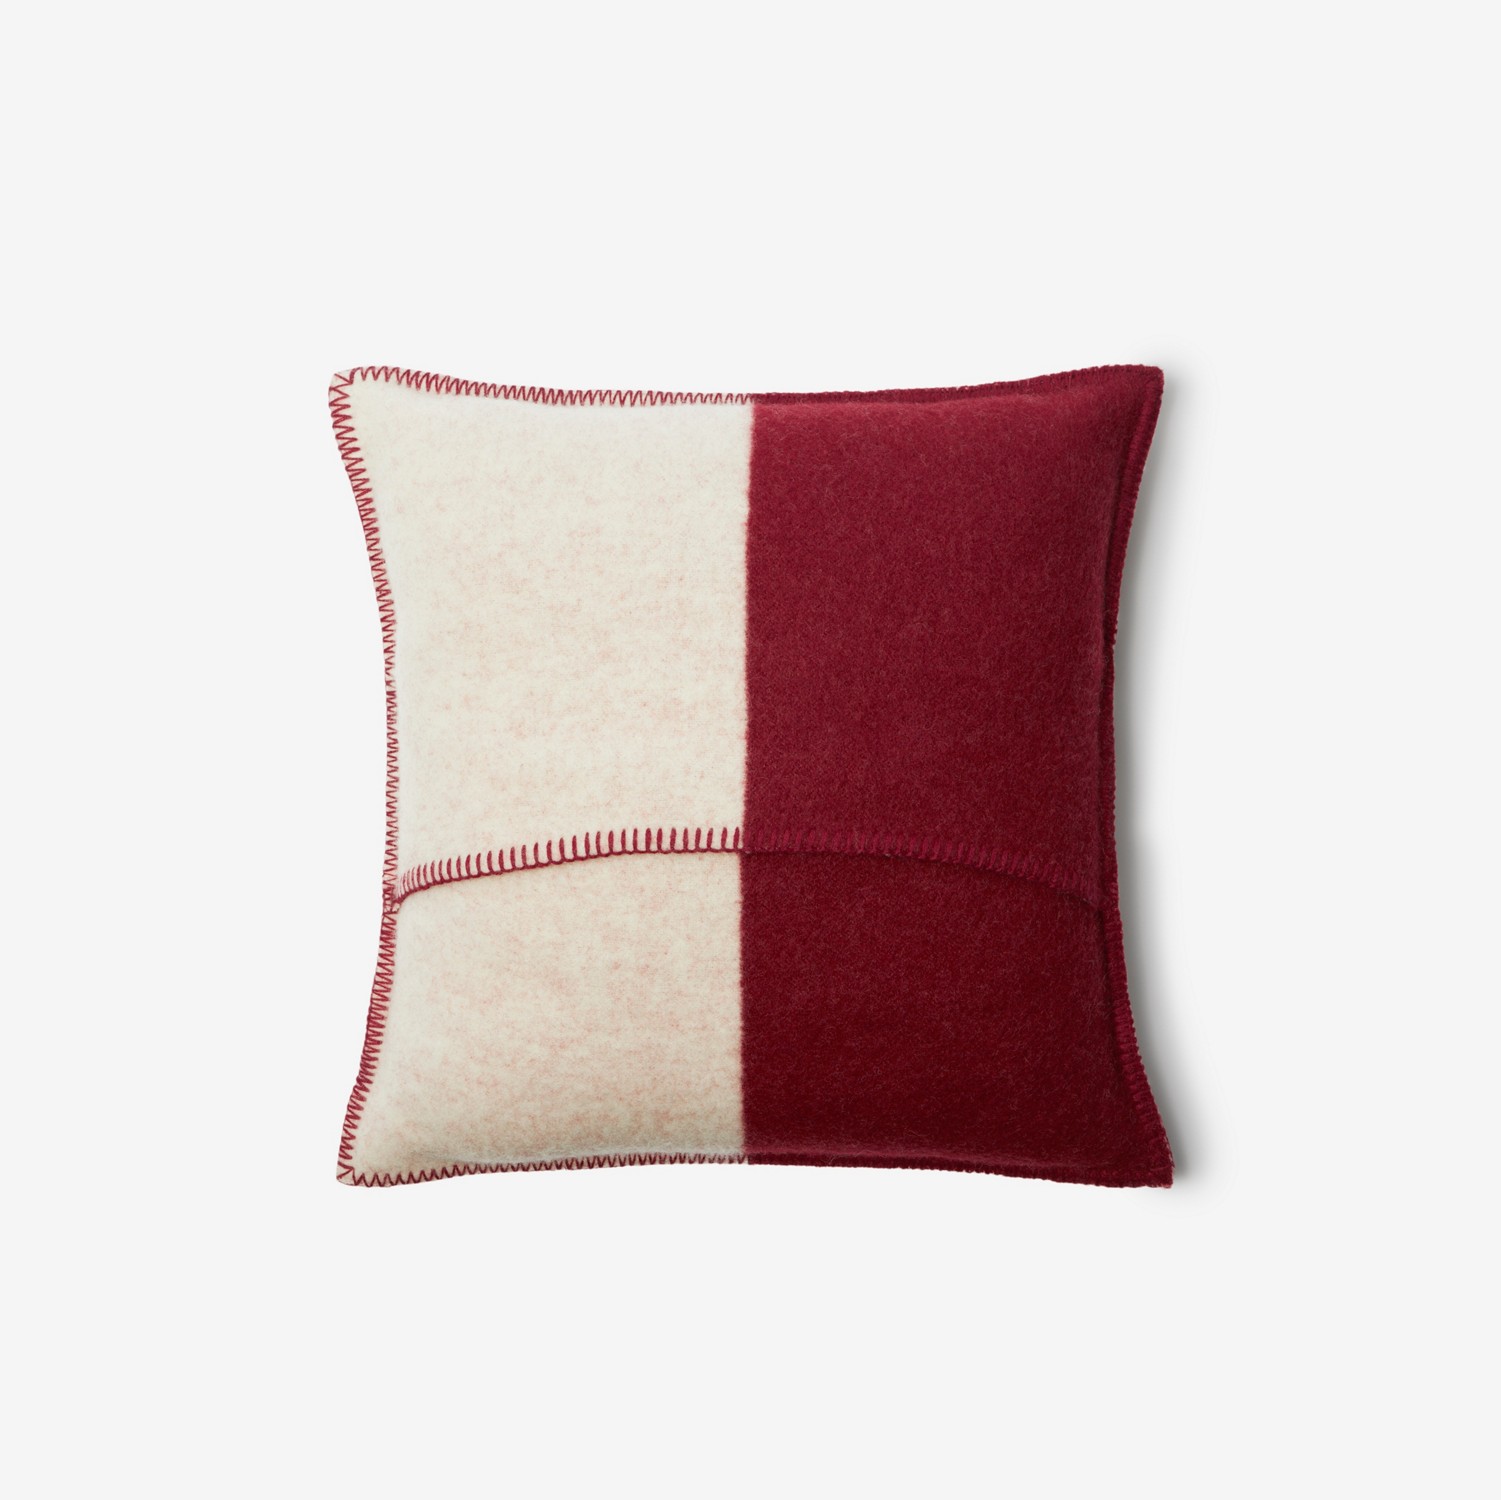 马术骑士徽标羊毛靠枕 (树莓红) | Burberry® 博柏利官网